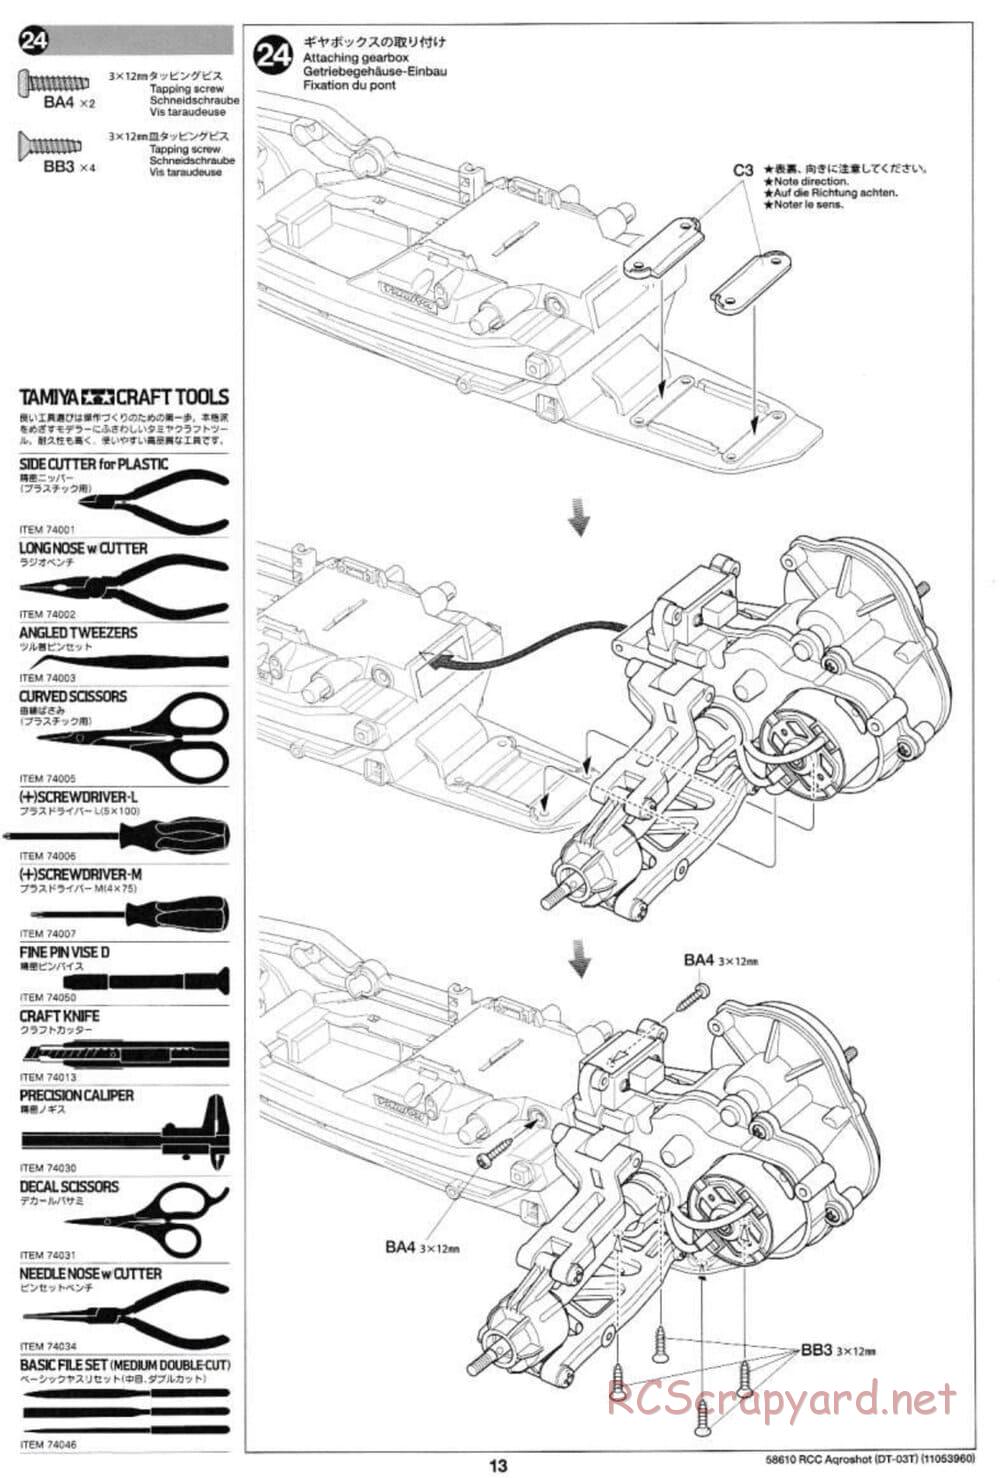 Tamiya - Aqroshot Chassis - Manual - Page 13